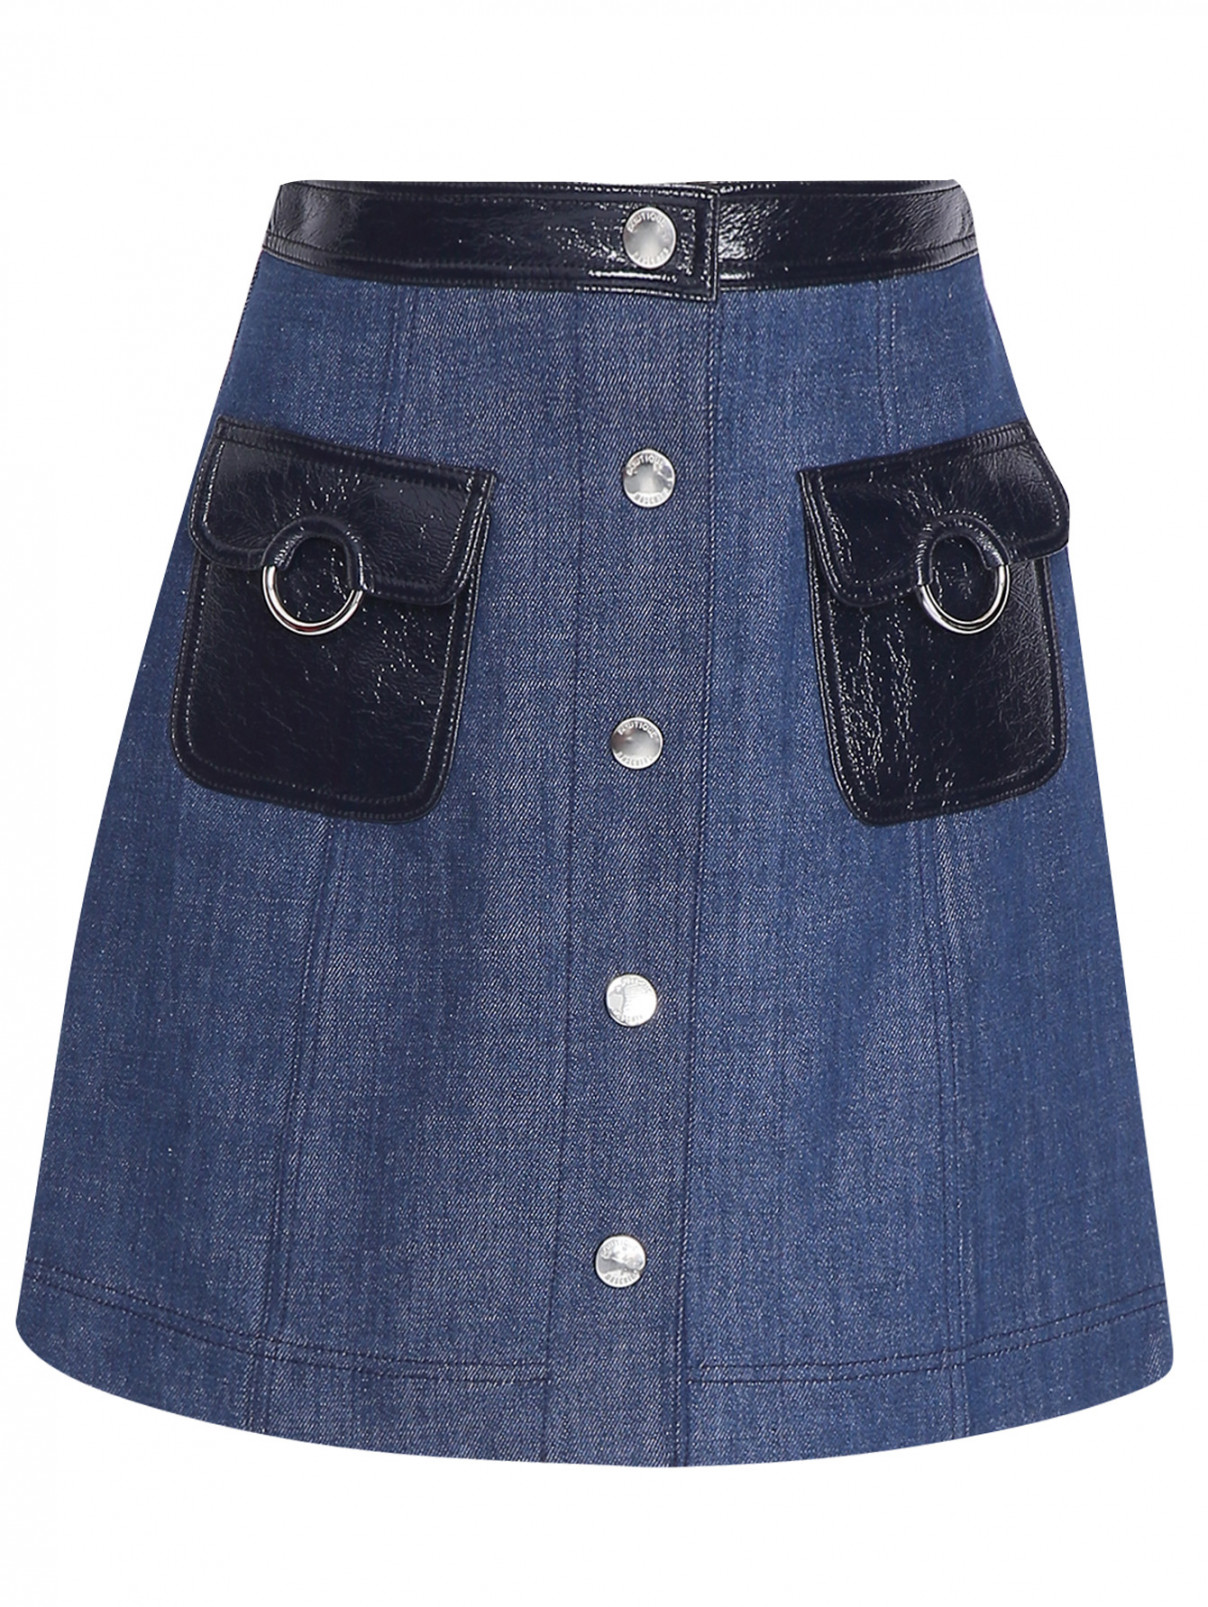 Джинсовая юбка-мини из хлопка с накладными карманами Moschino Boutique  –  Общий вид  – Цвет:  Синий